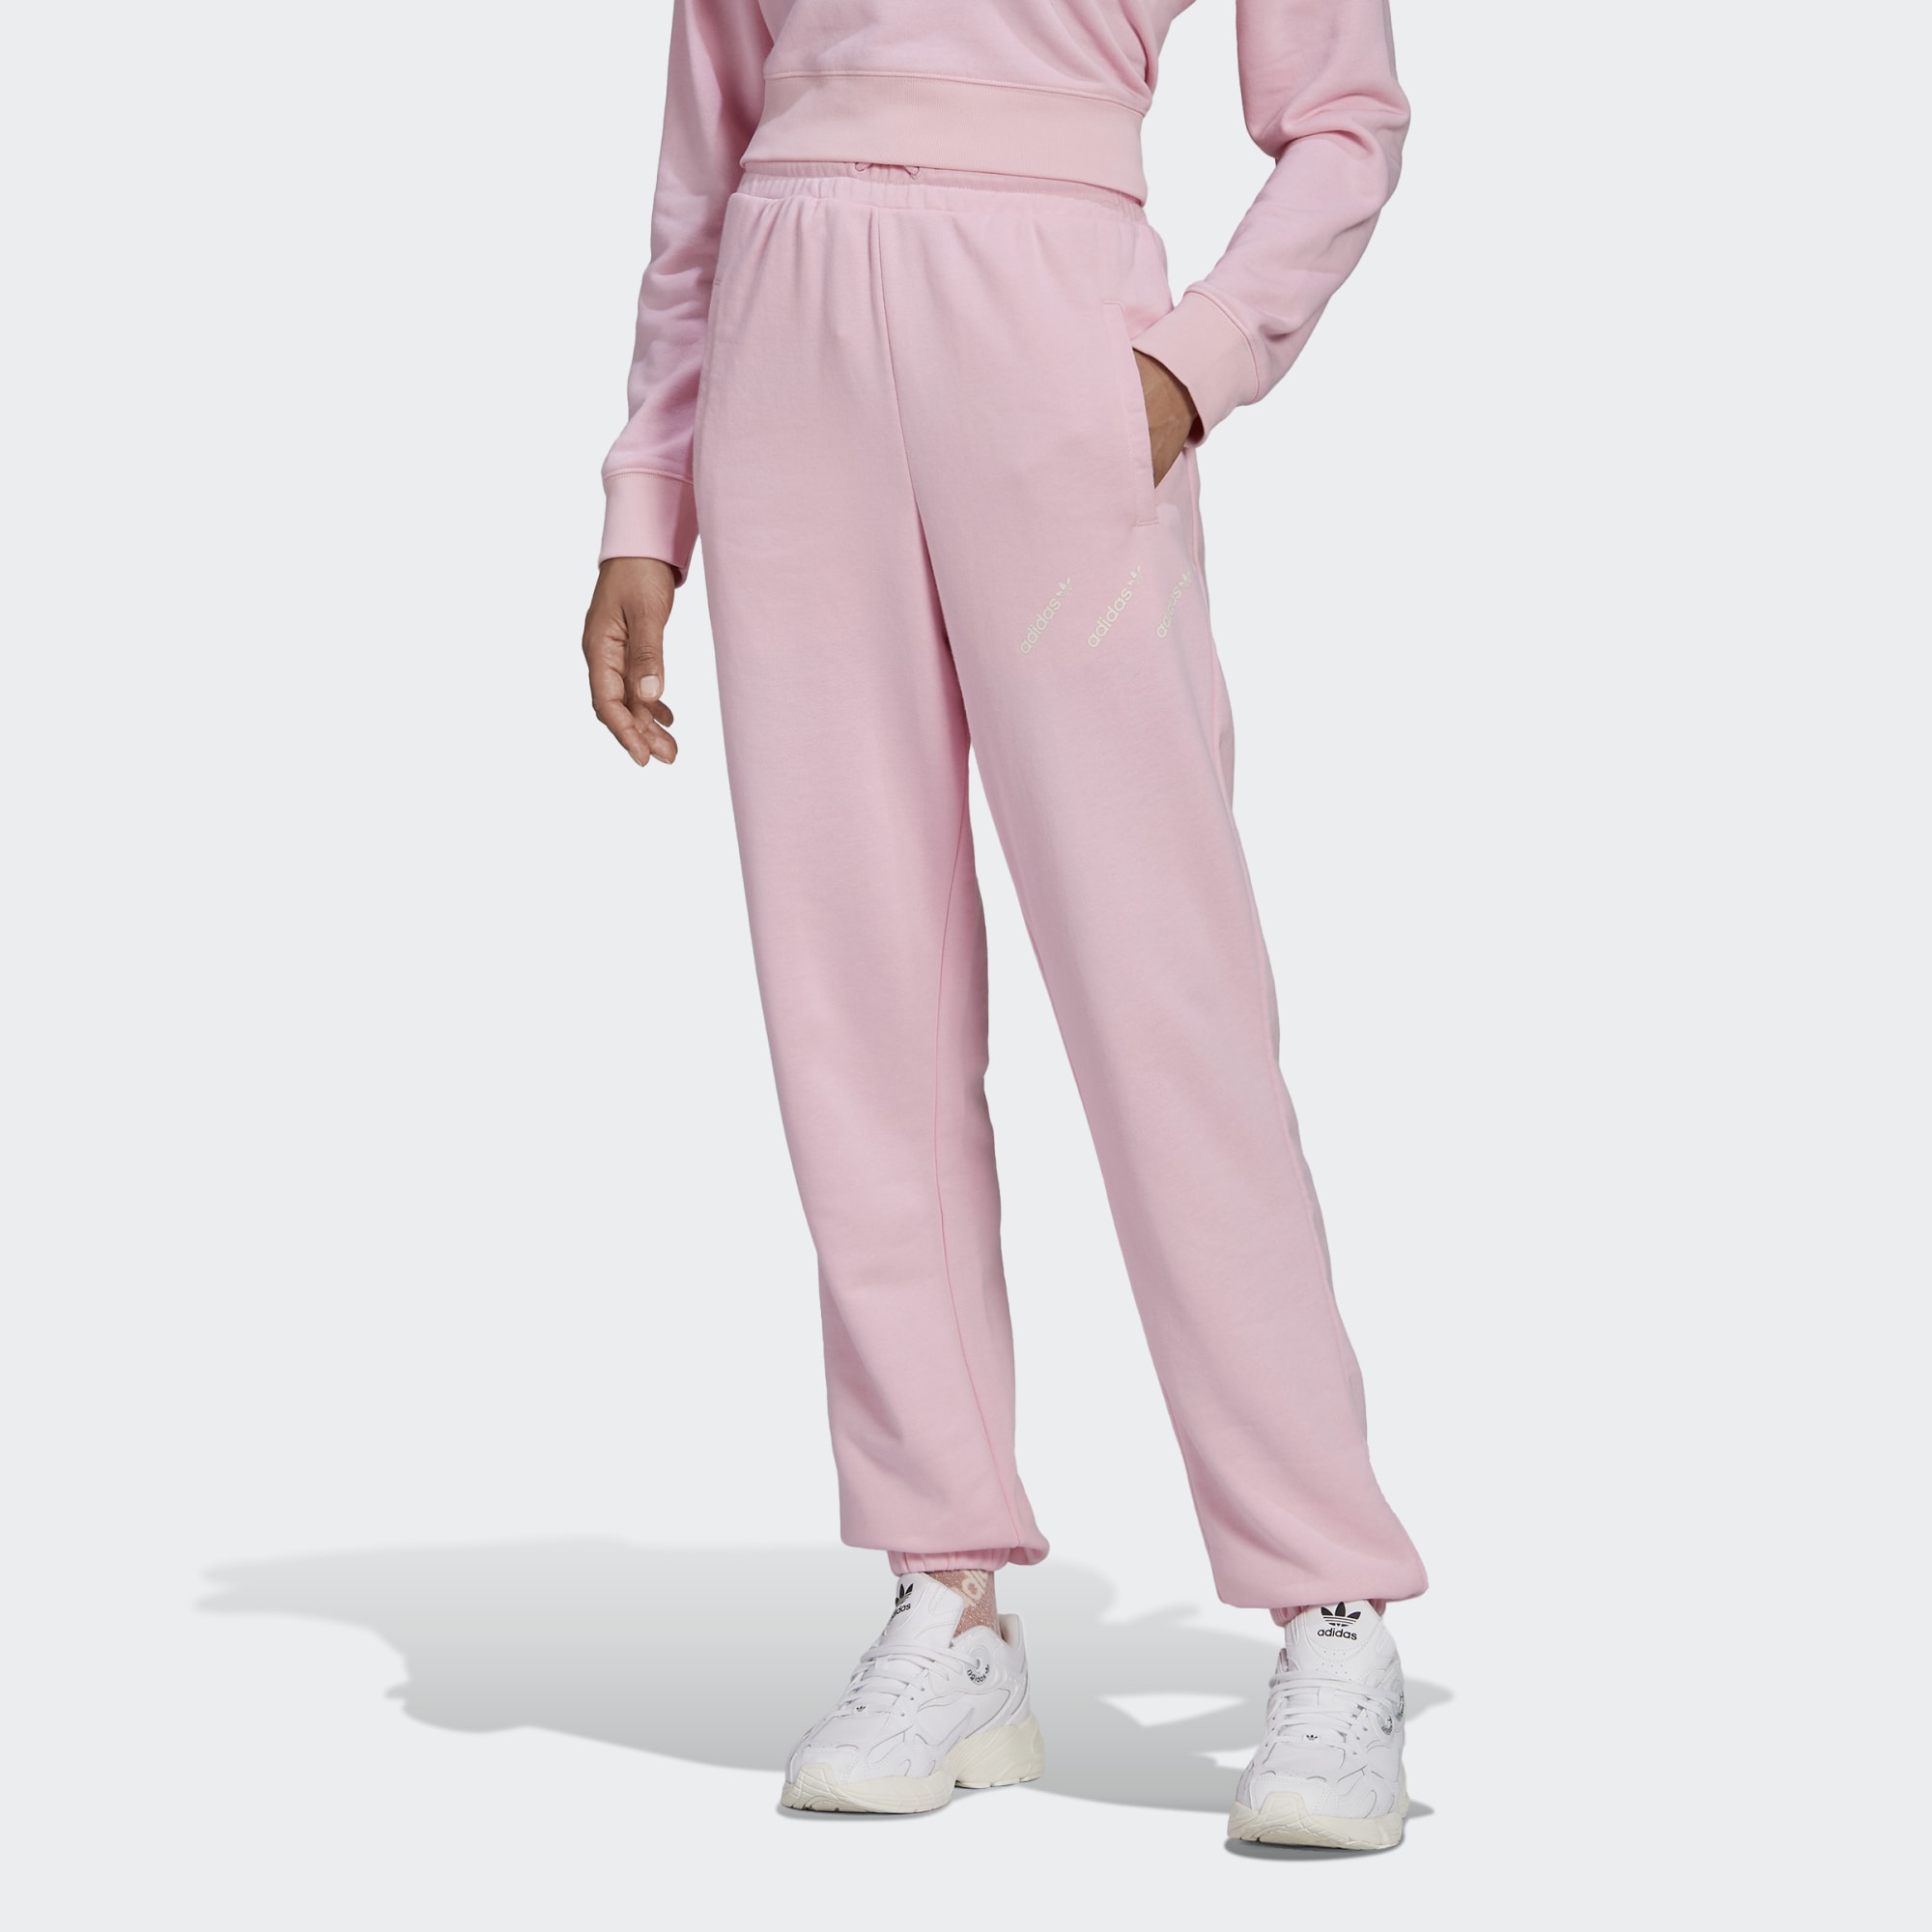 Спортивные брюки женские Adidas HM4873 розовые 36